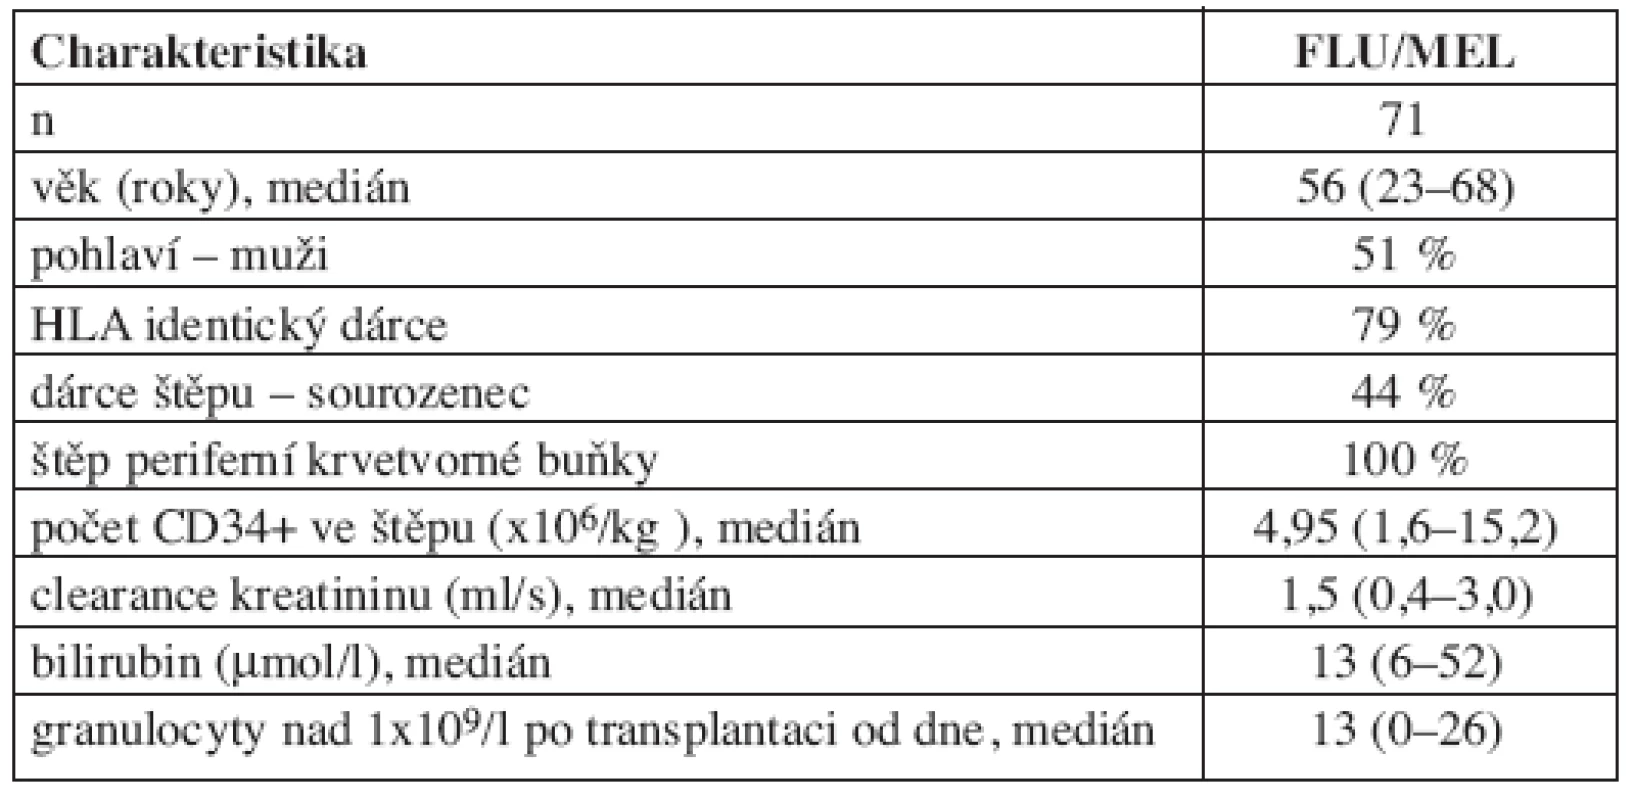 Charakteristiky souboru pacientů s předtransplantační přípravou FLU/MEL.